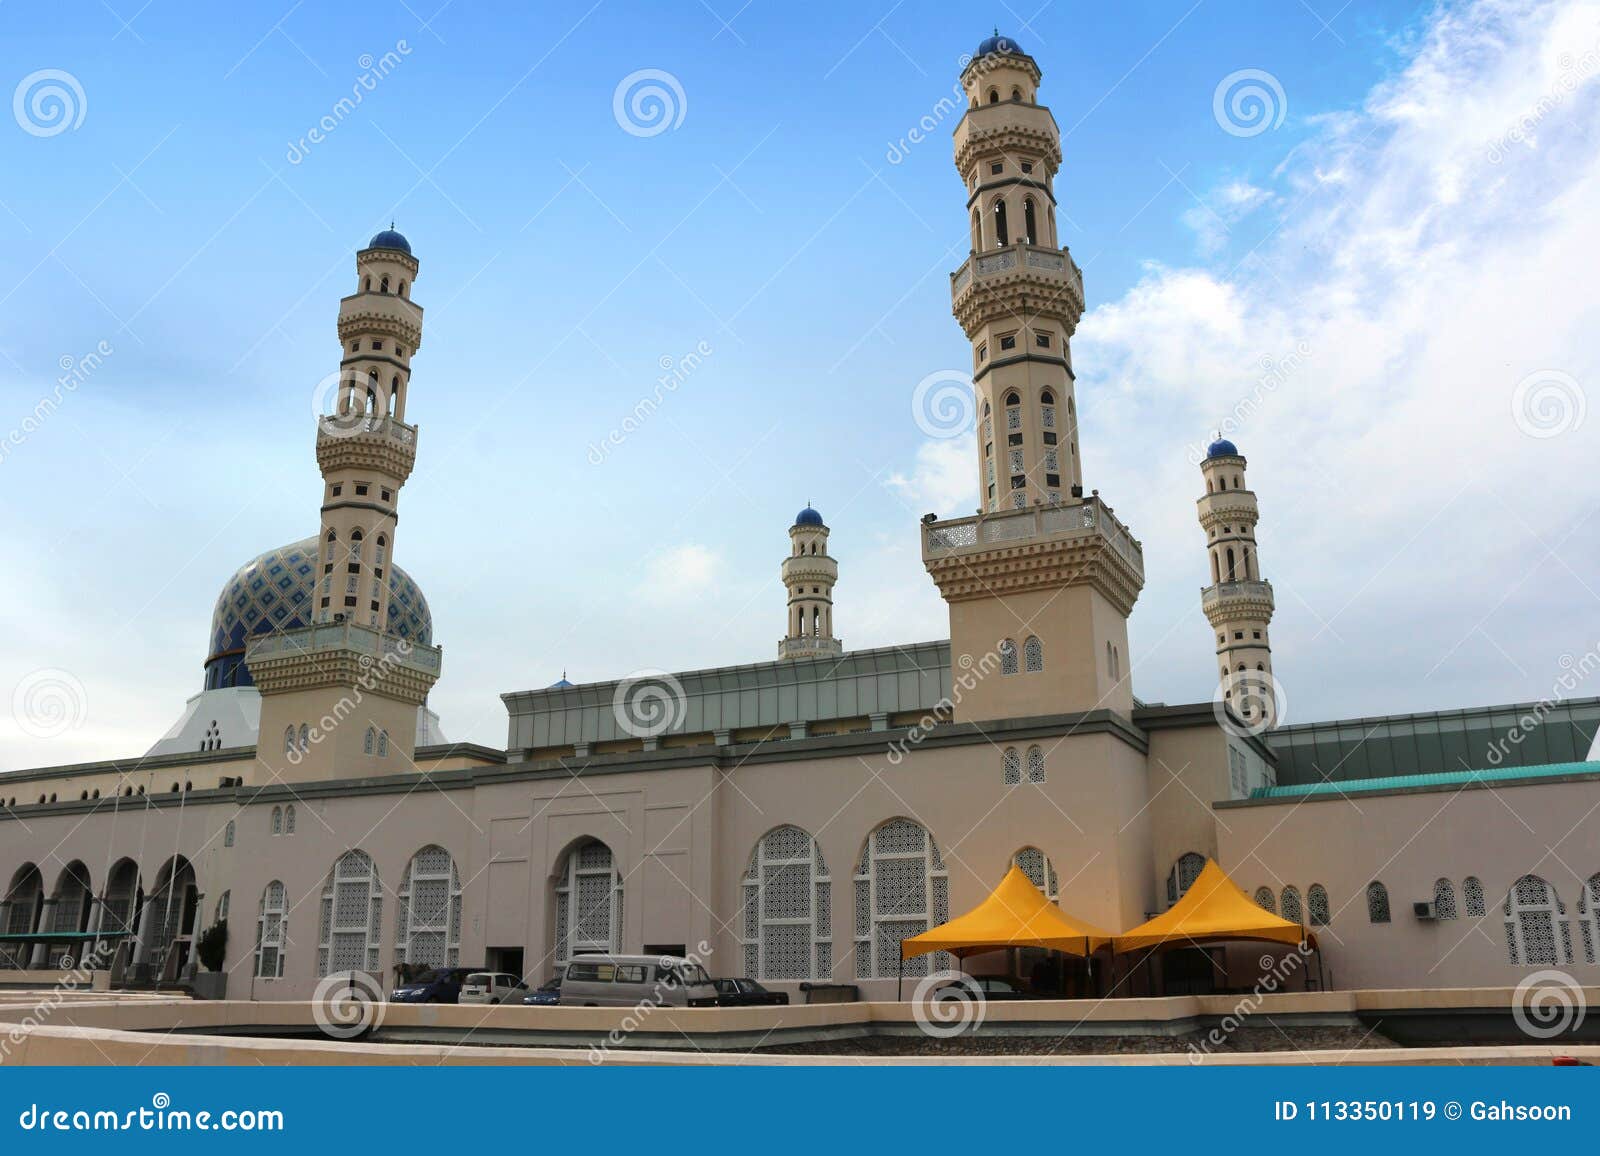 Kota Kinabalu City Floating Mosque At Sabah Borneo ...